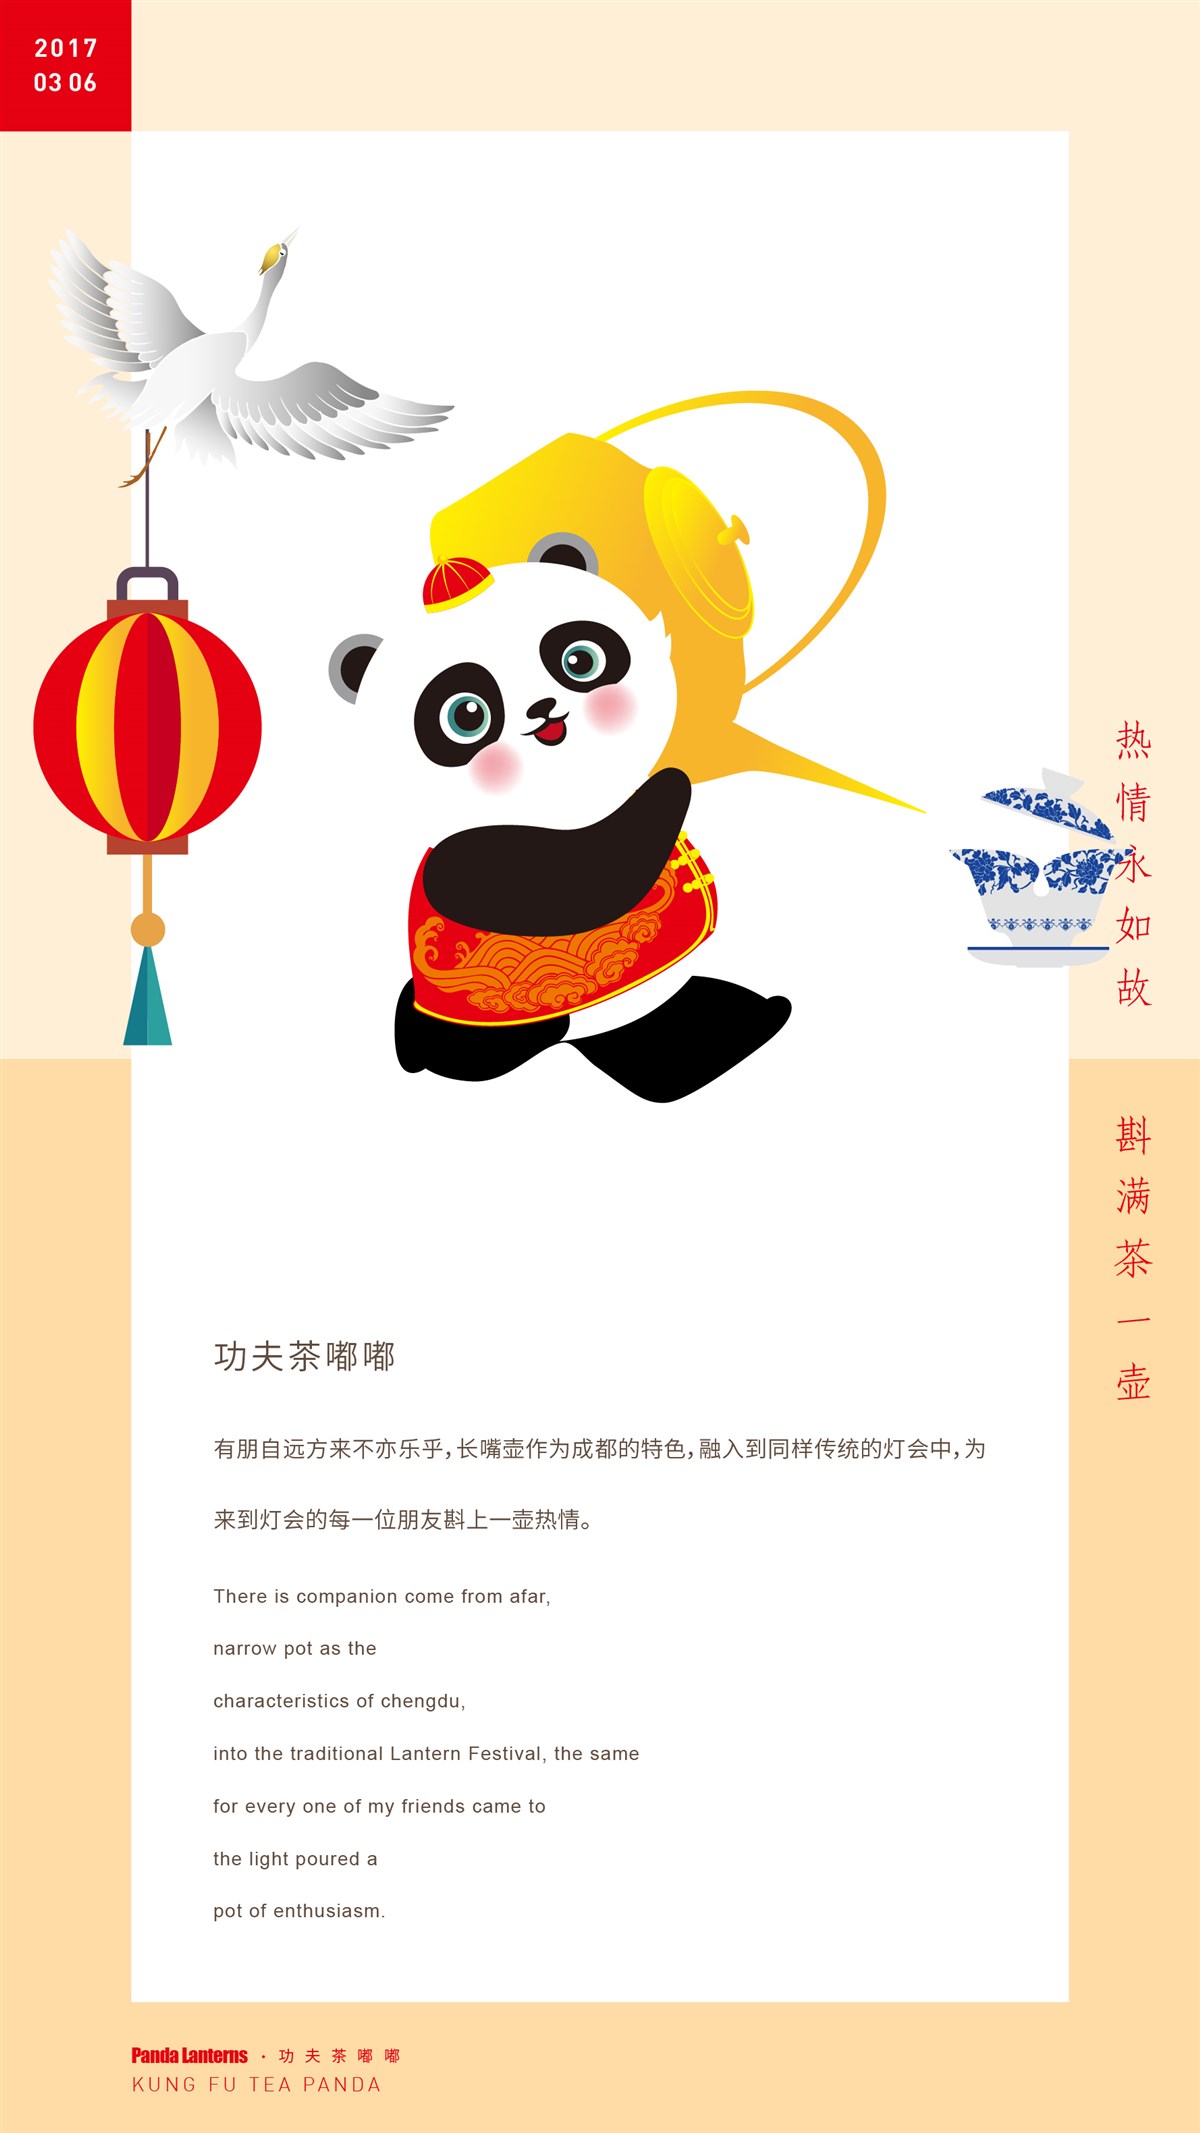 成都国际熊猫灯会/熊猫角色展示--時与間設計